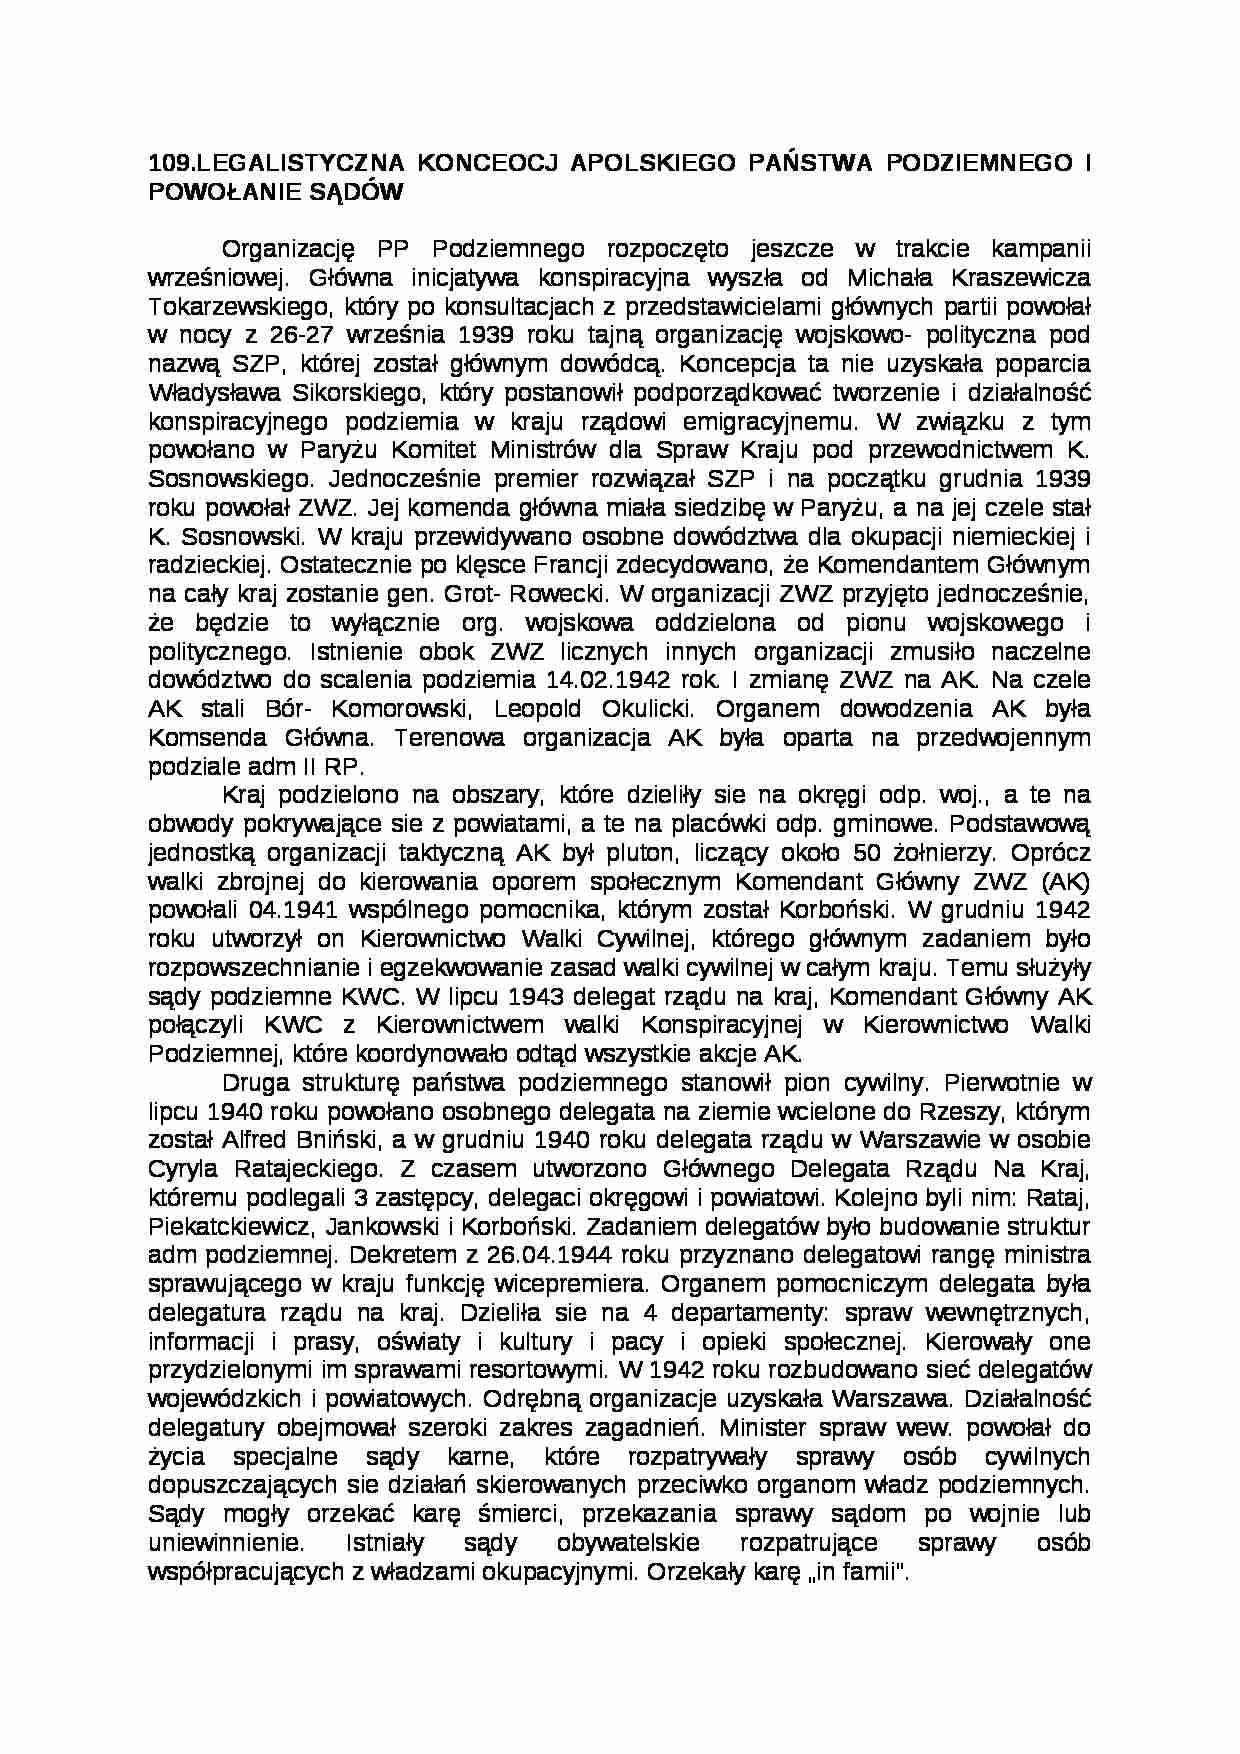 Legalistyczna koncepcja polskiego państwa podziemnego - strona 1